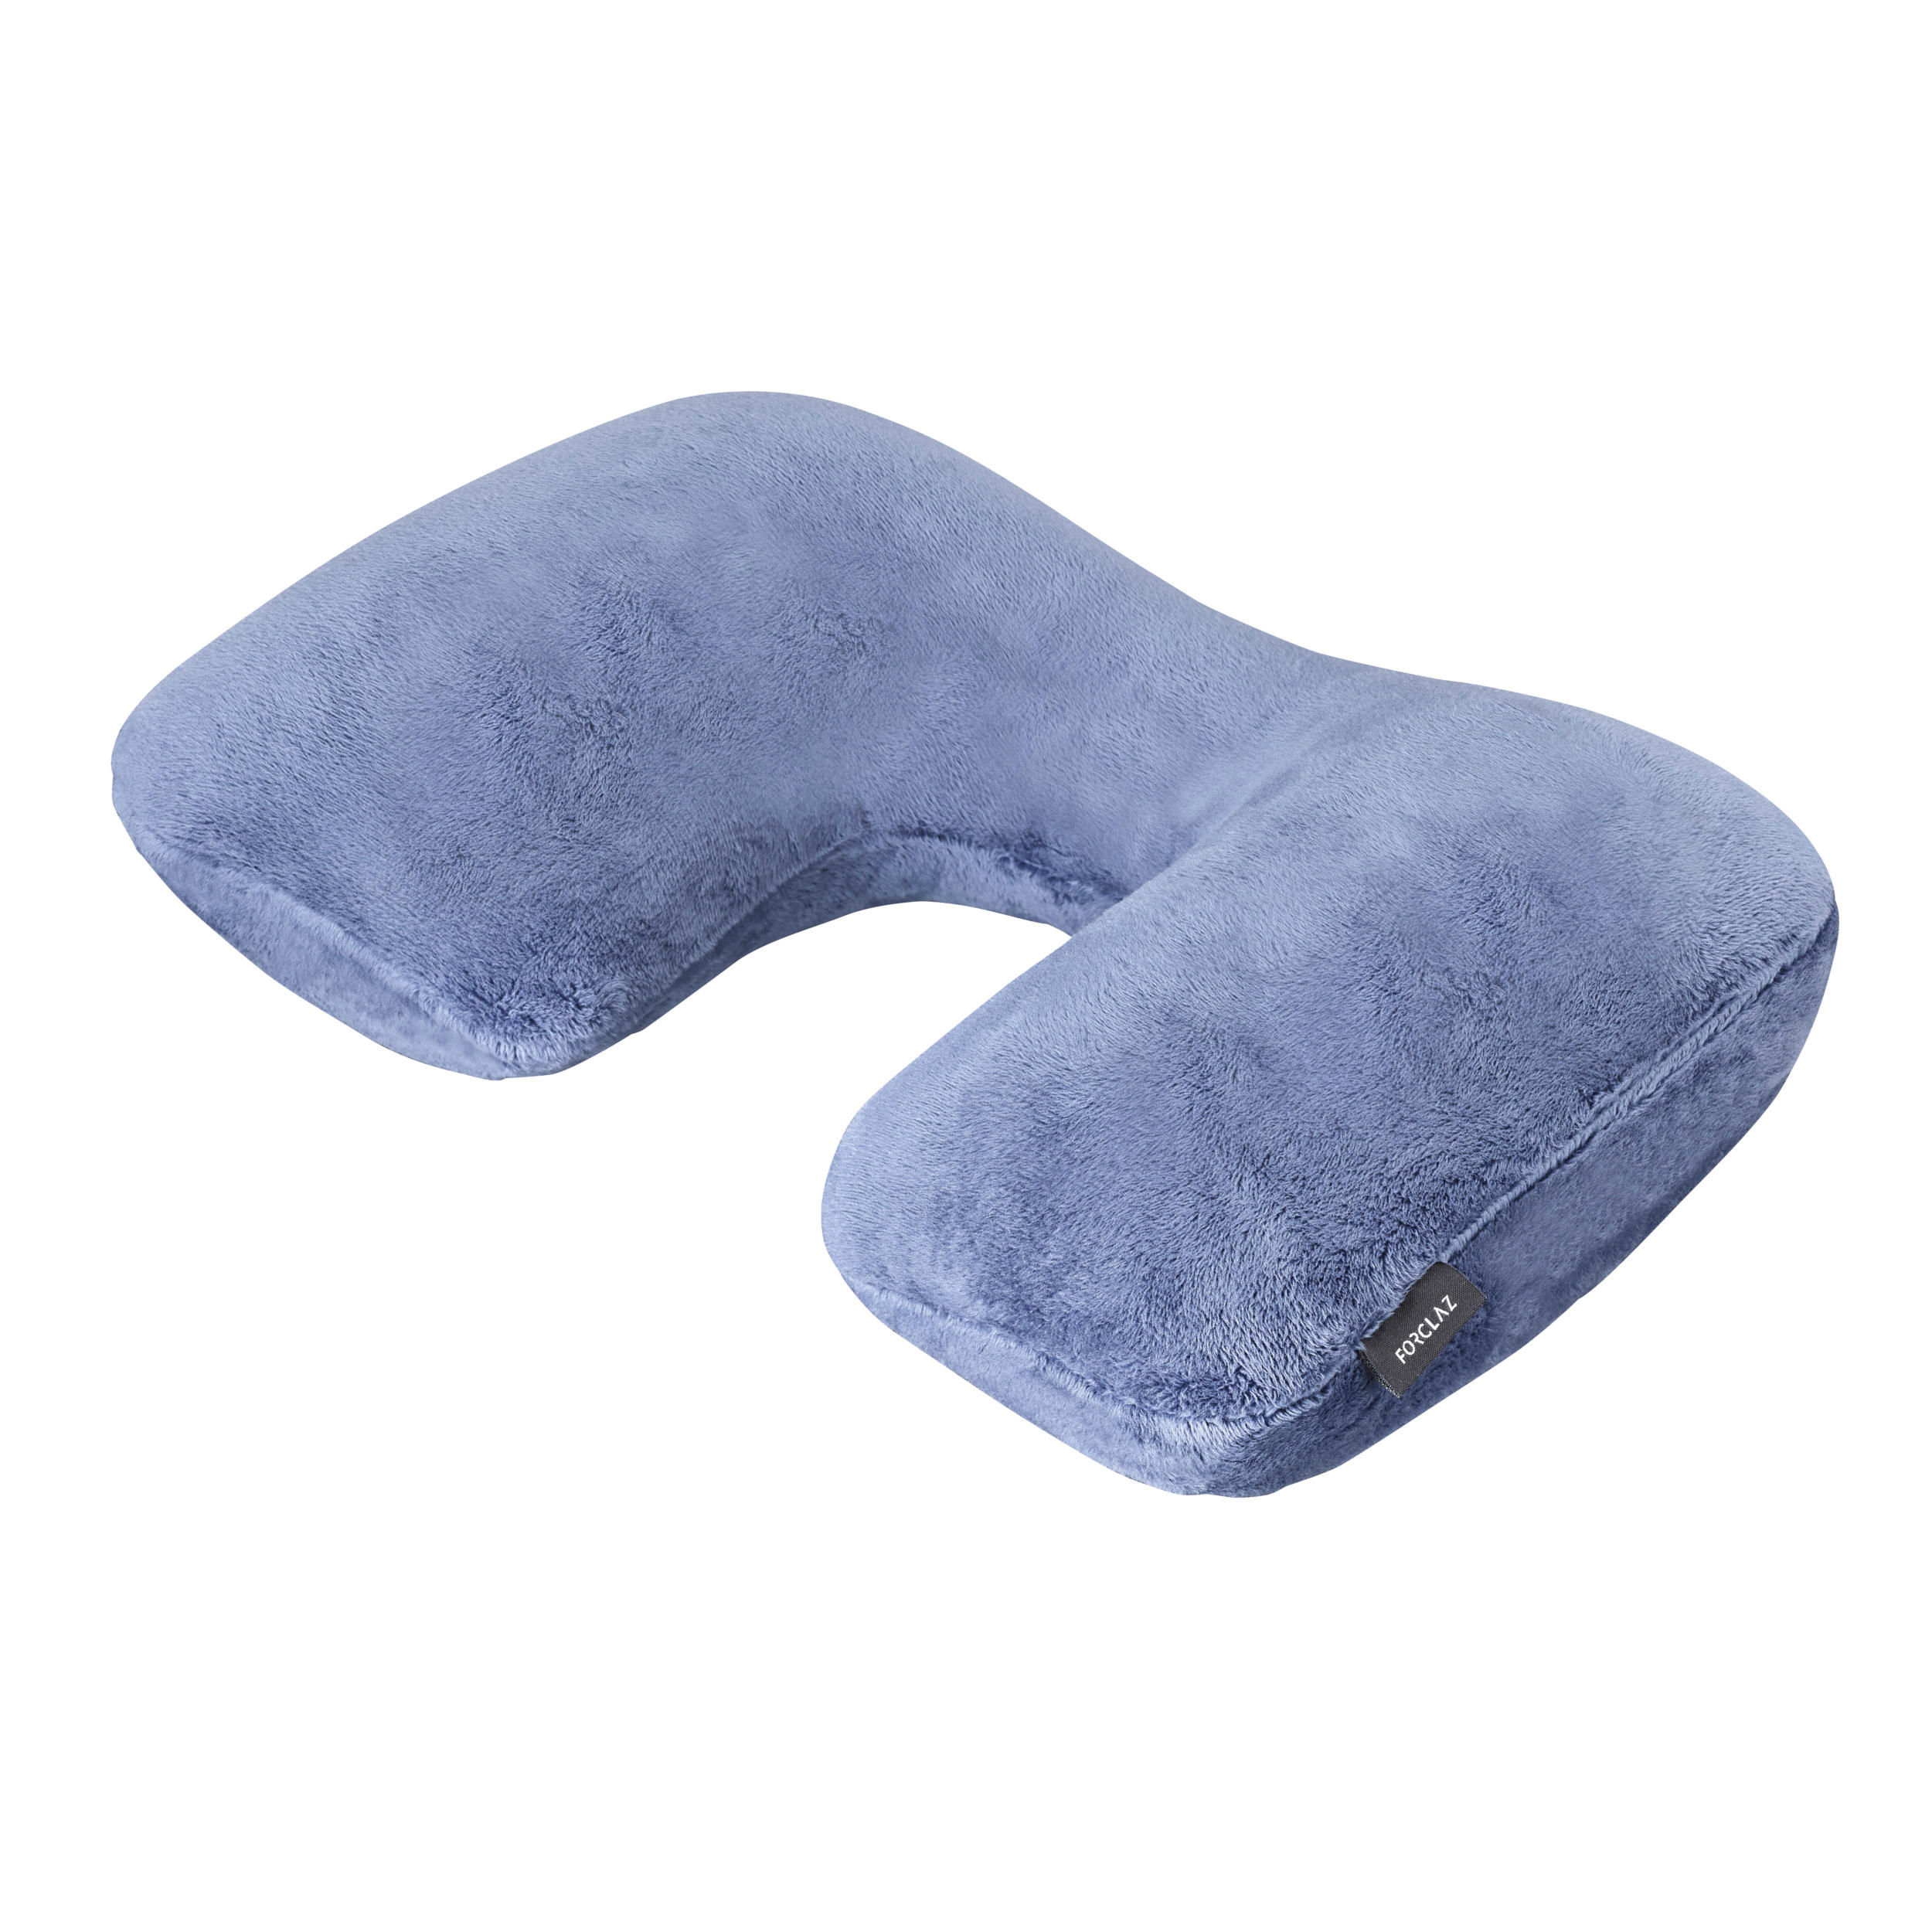 cuscinetti di supporto per cervicale a forma di rettangolo viaggi colore blu e grigio confezione da 2 cuscini comodi per voli aerei Cuscino gonfiabile da campeggio GOODCHANCEUK 38 x 24,4 cm 